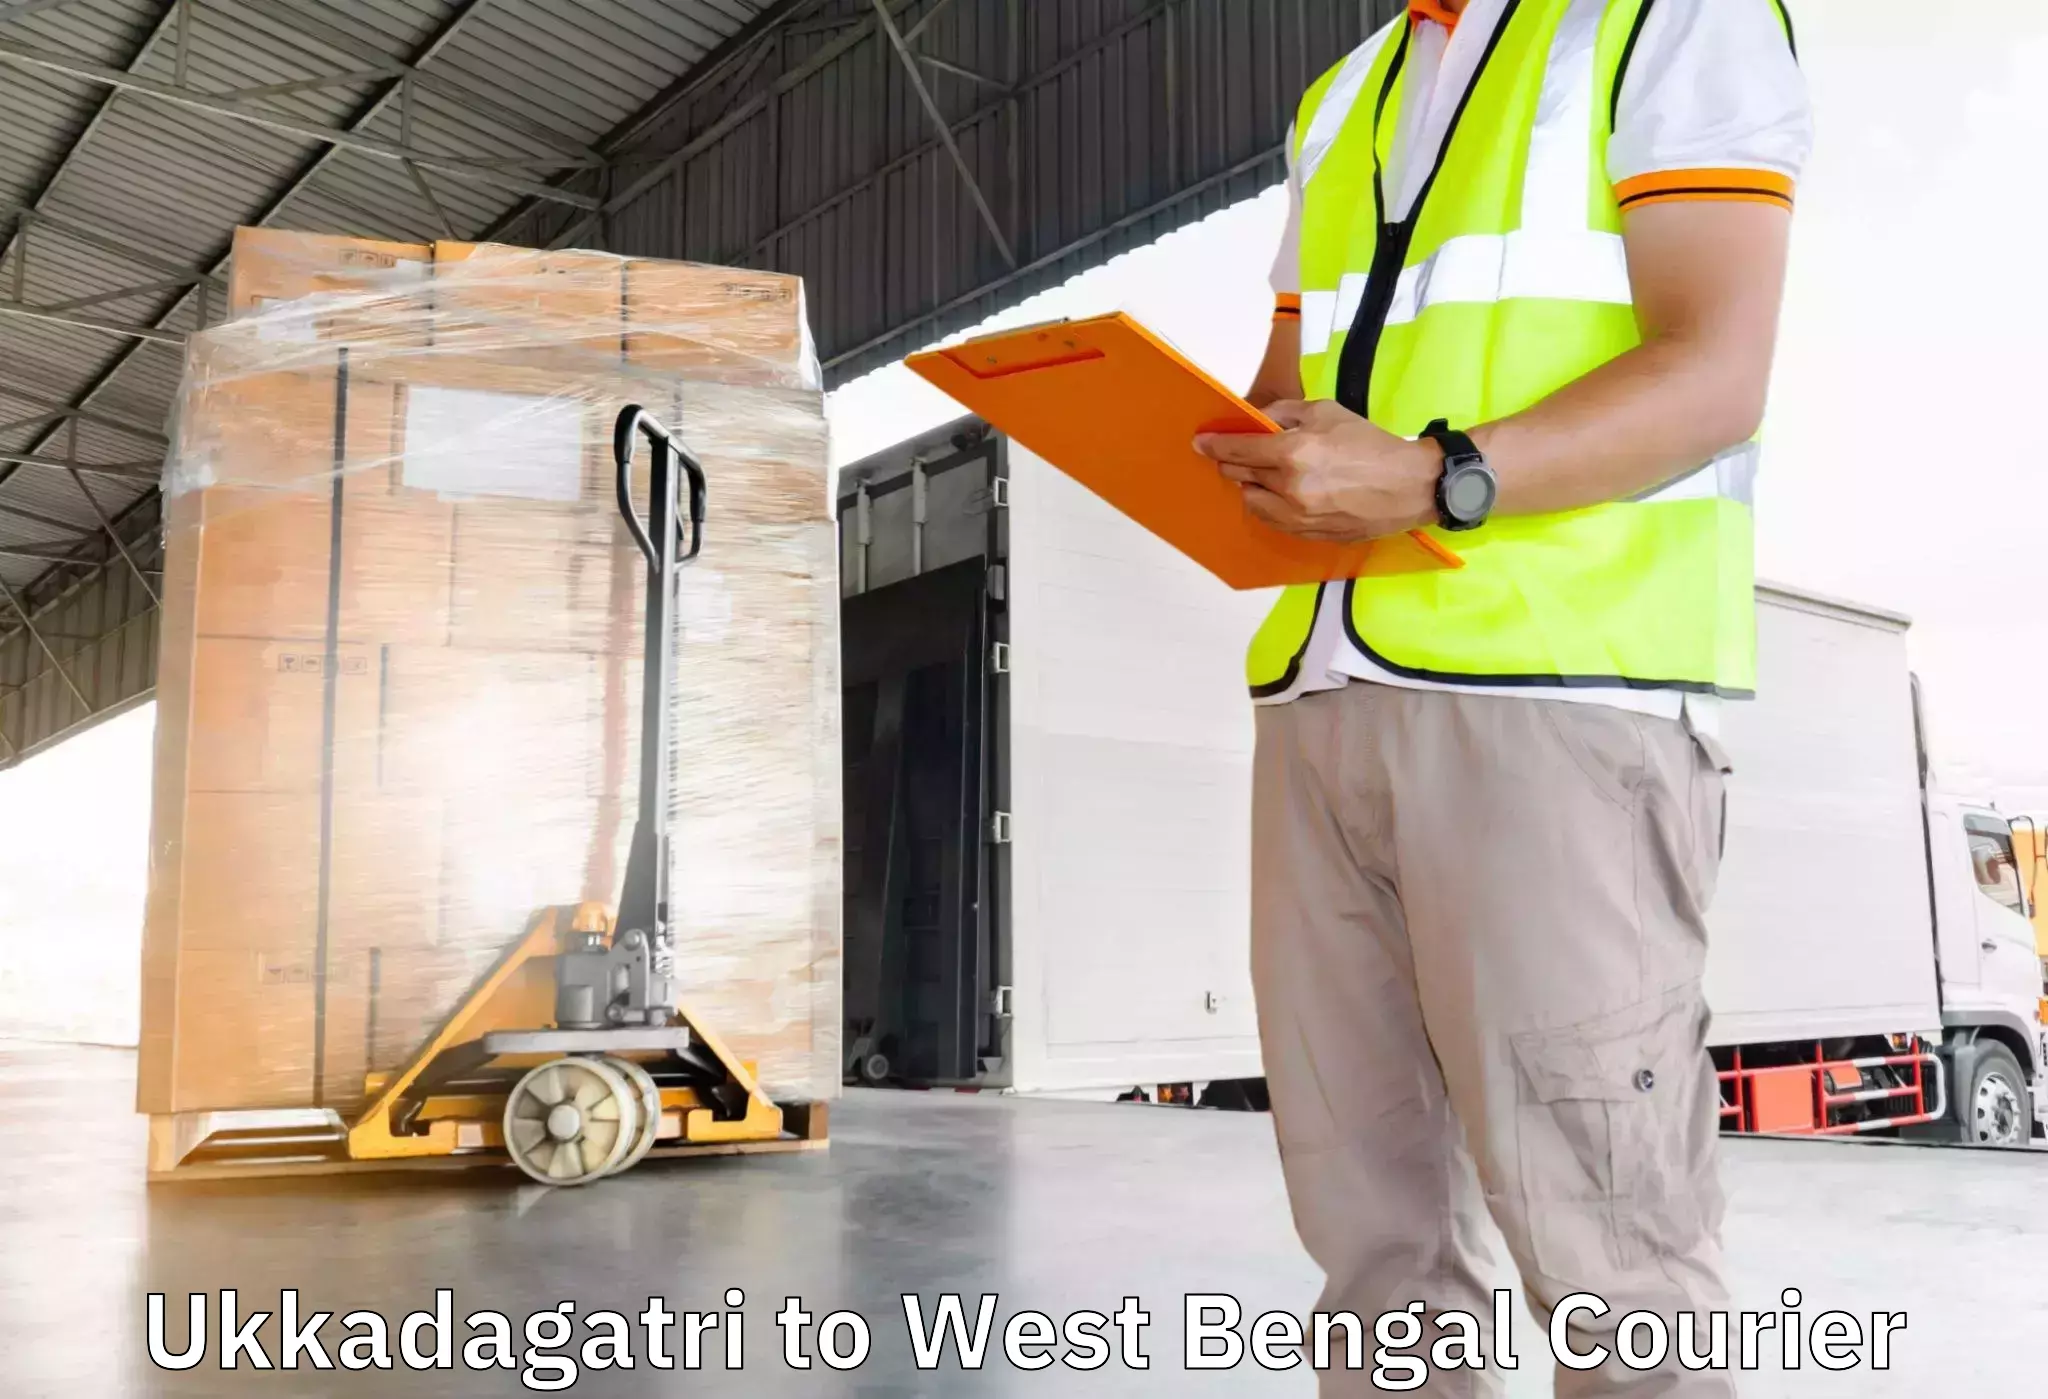 Skilled furniture movers Ukkadagatri to Maynaguri